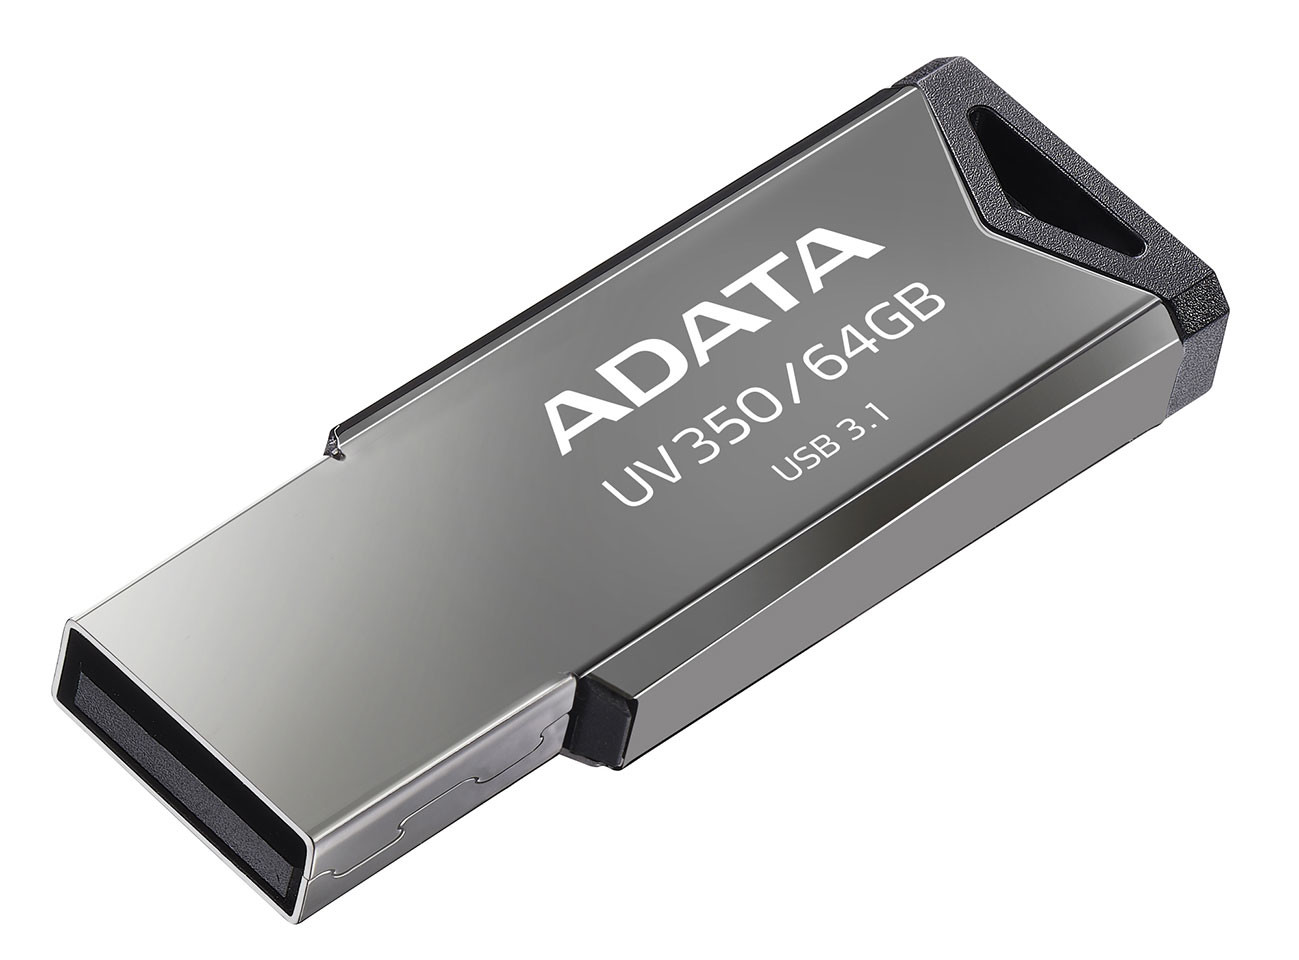 ADATA şık görünümlü UV350 USB belleğini tanıttı